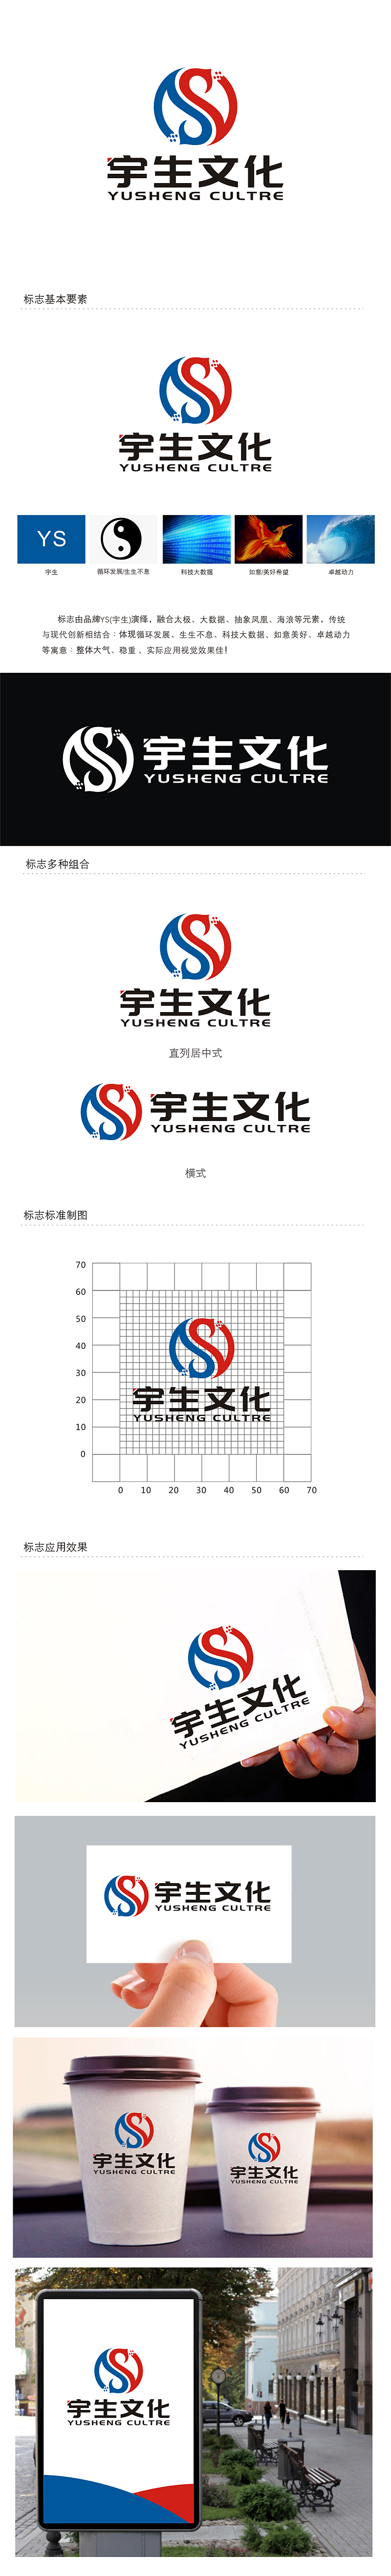 劳志飞的山东宇生文化股份有限公司logo设计